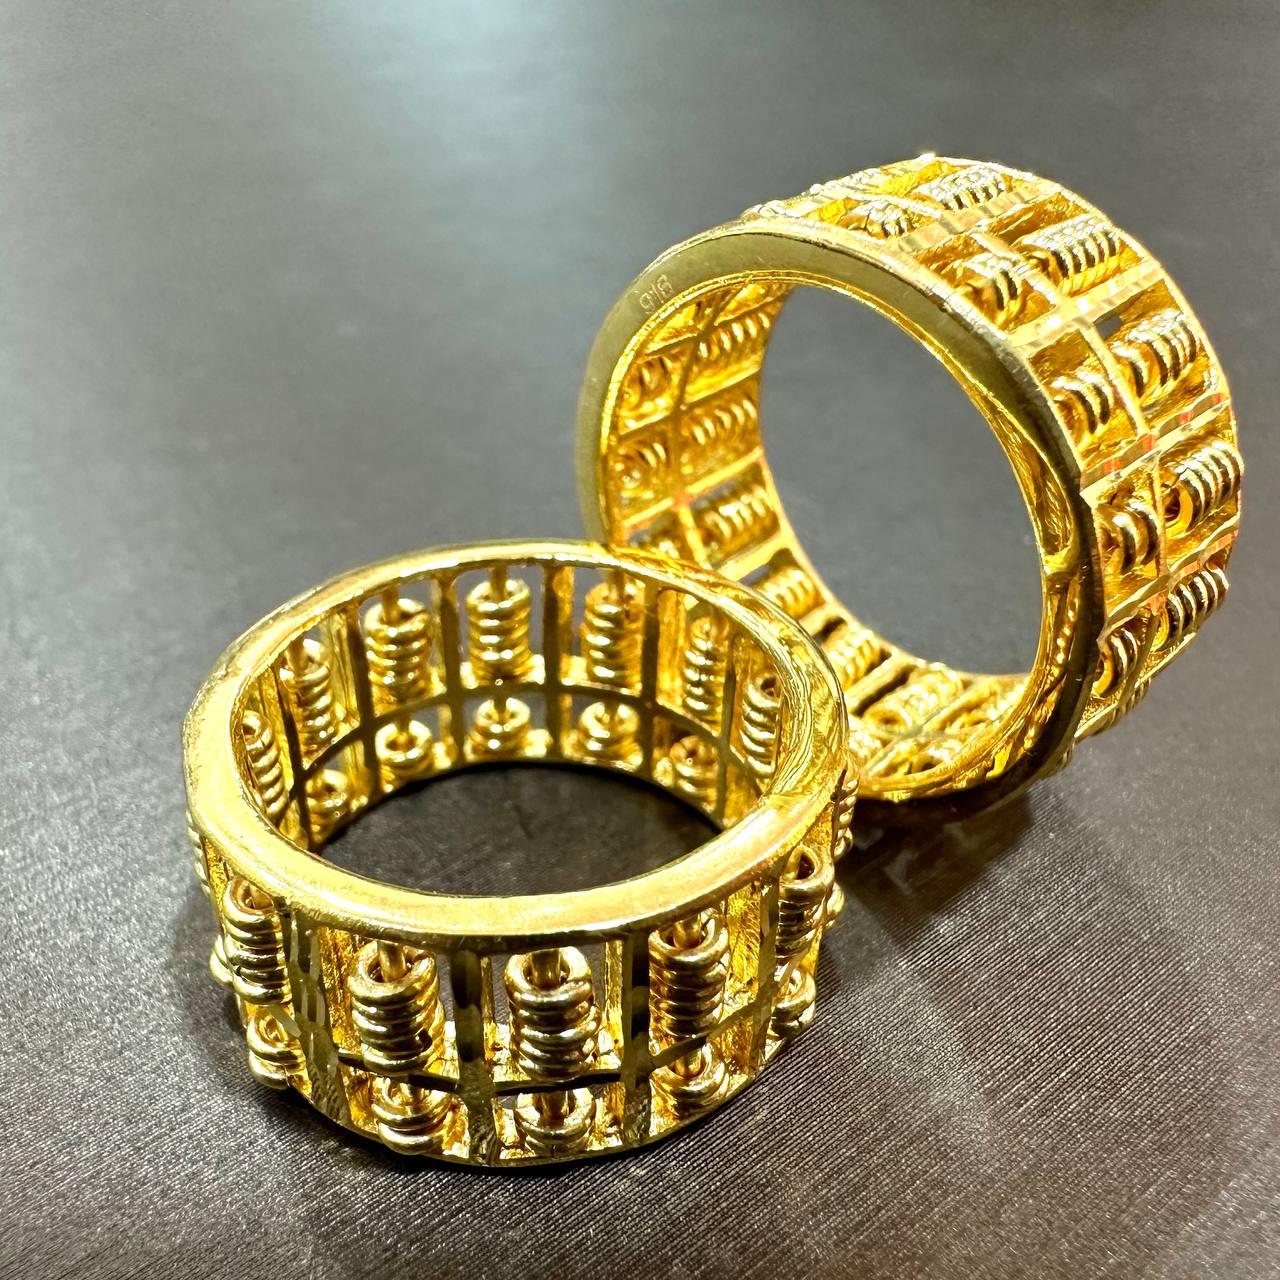 Real Gold 22k Ring, SBJ1050 - Etsy Singapore